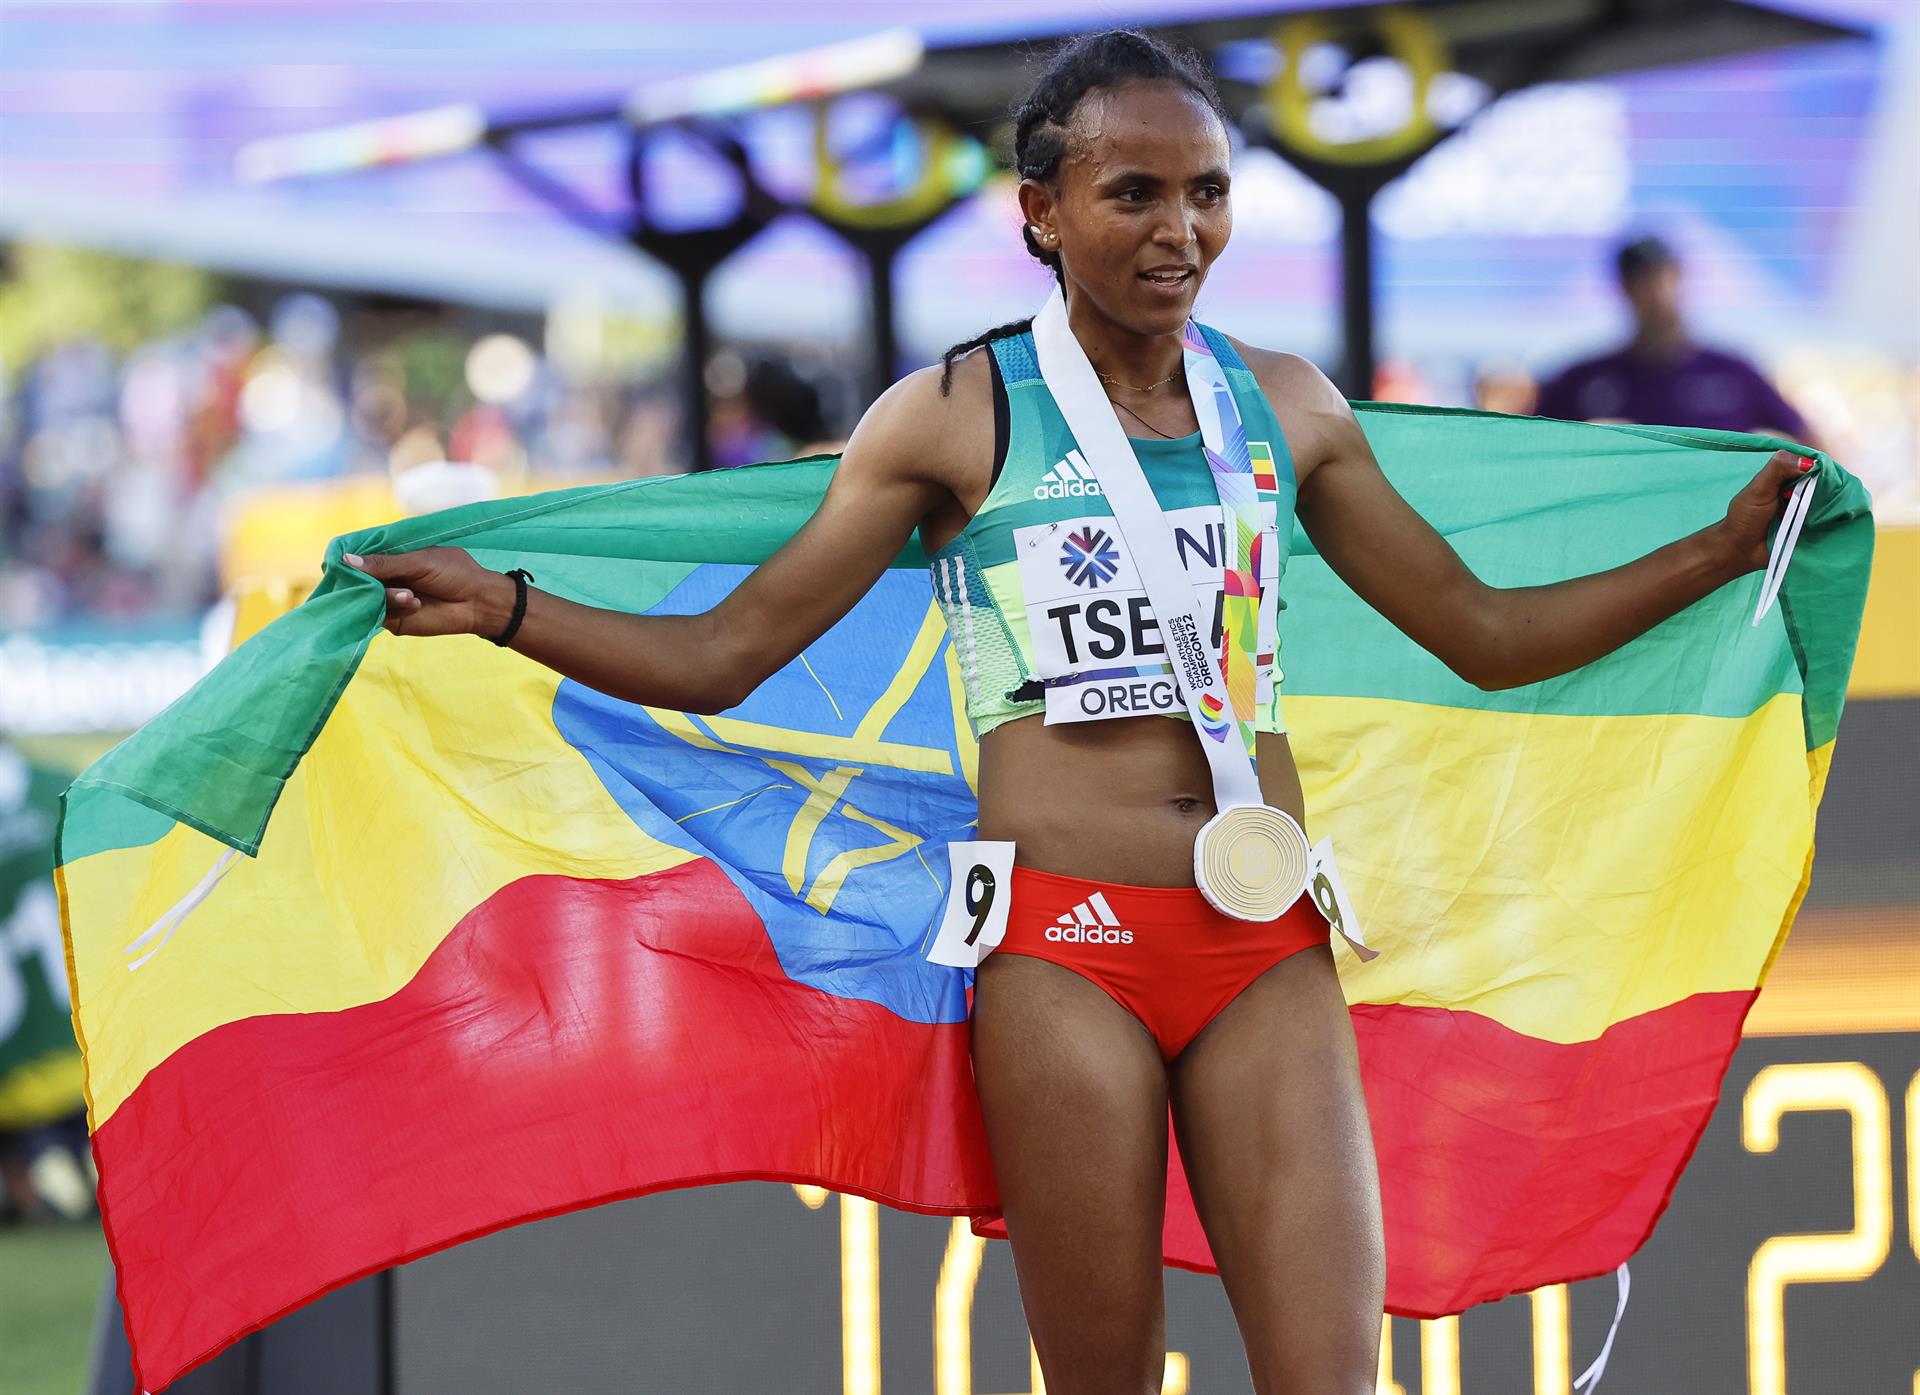 La etíope Gudaf Tsegay celebrar tras ganar la medalla de oro en la prueba de 5.000m en el Campeonato Mundial de Atletismo Oregon22 en Hayward Field en Eugene, Oregón (EE.UU.), este 23 de julio de 2022. EFE/EPA/John G. Mabanglo
